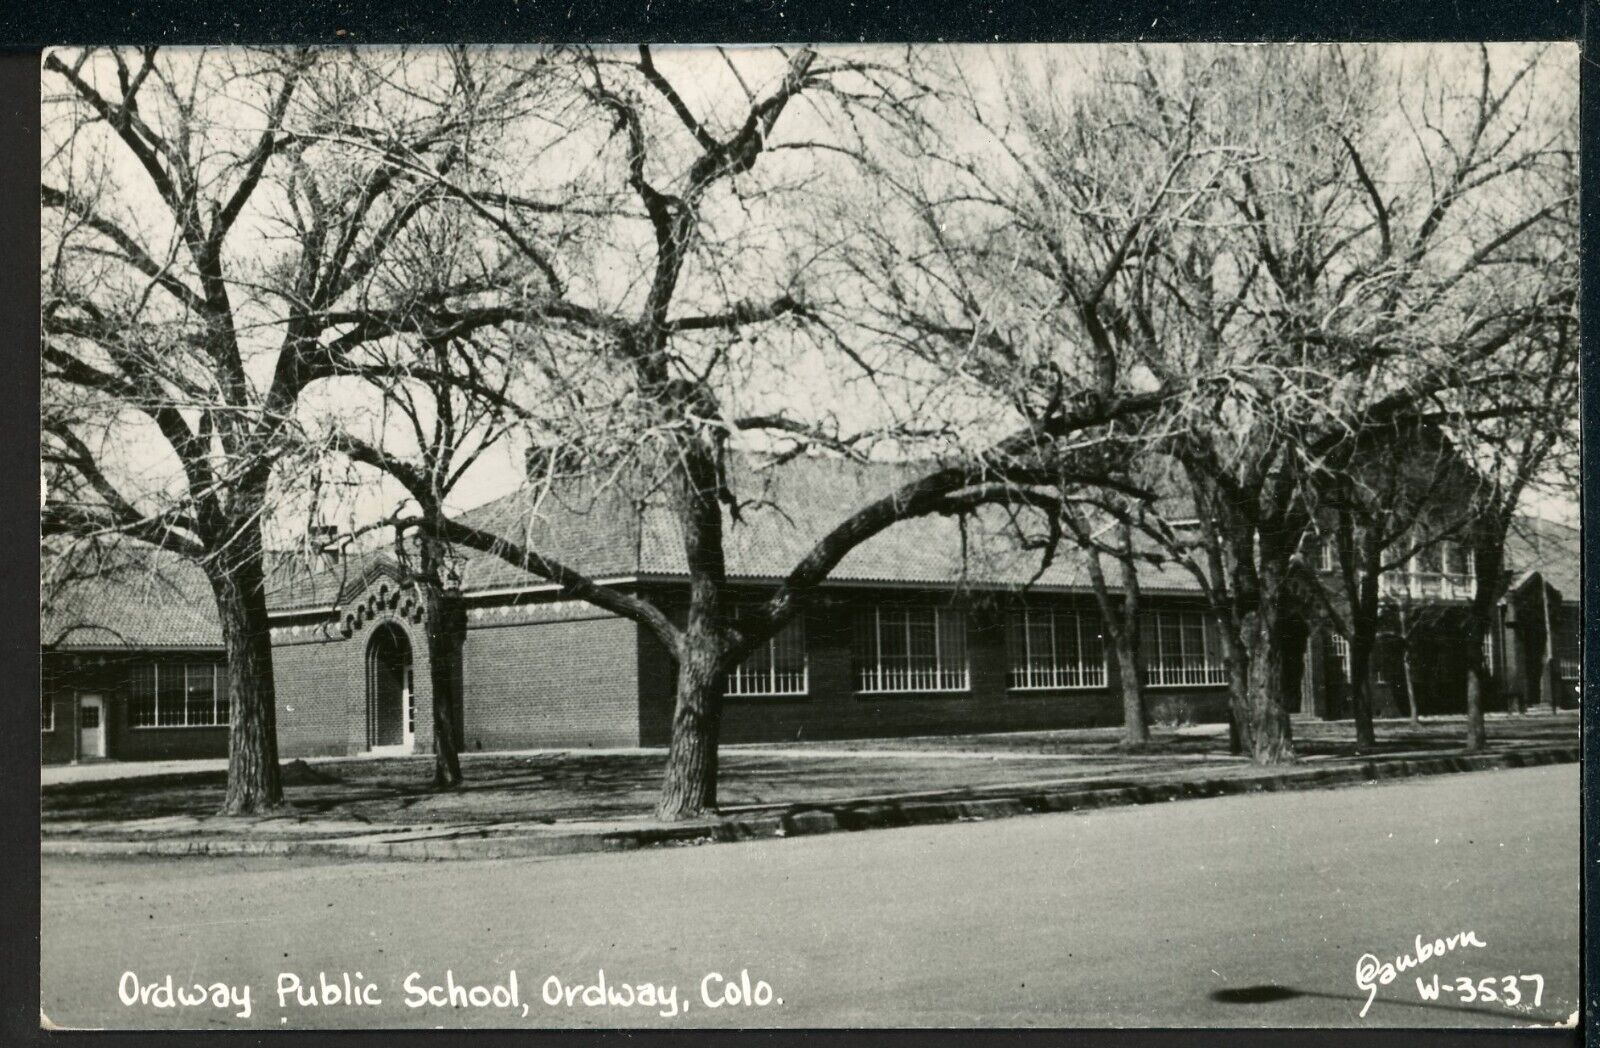 1955 RPPC Ordway Public School Colorado Historic Vintage Postcard Sanborn